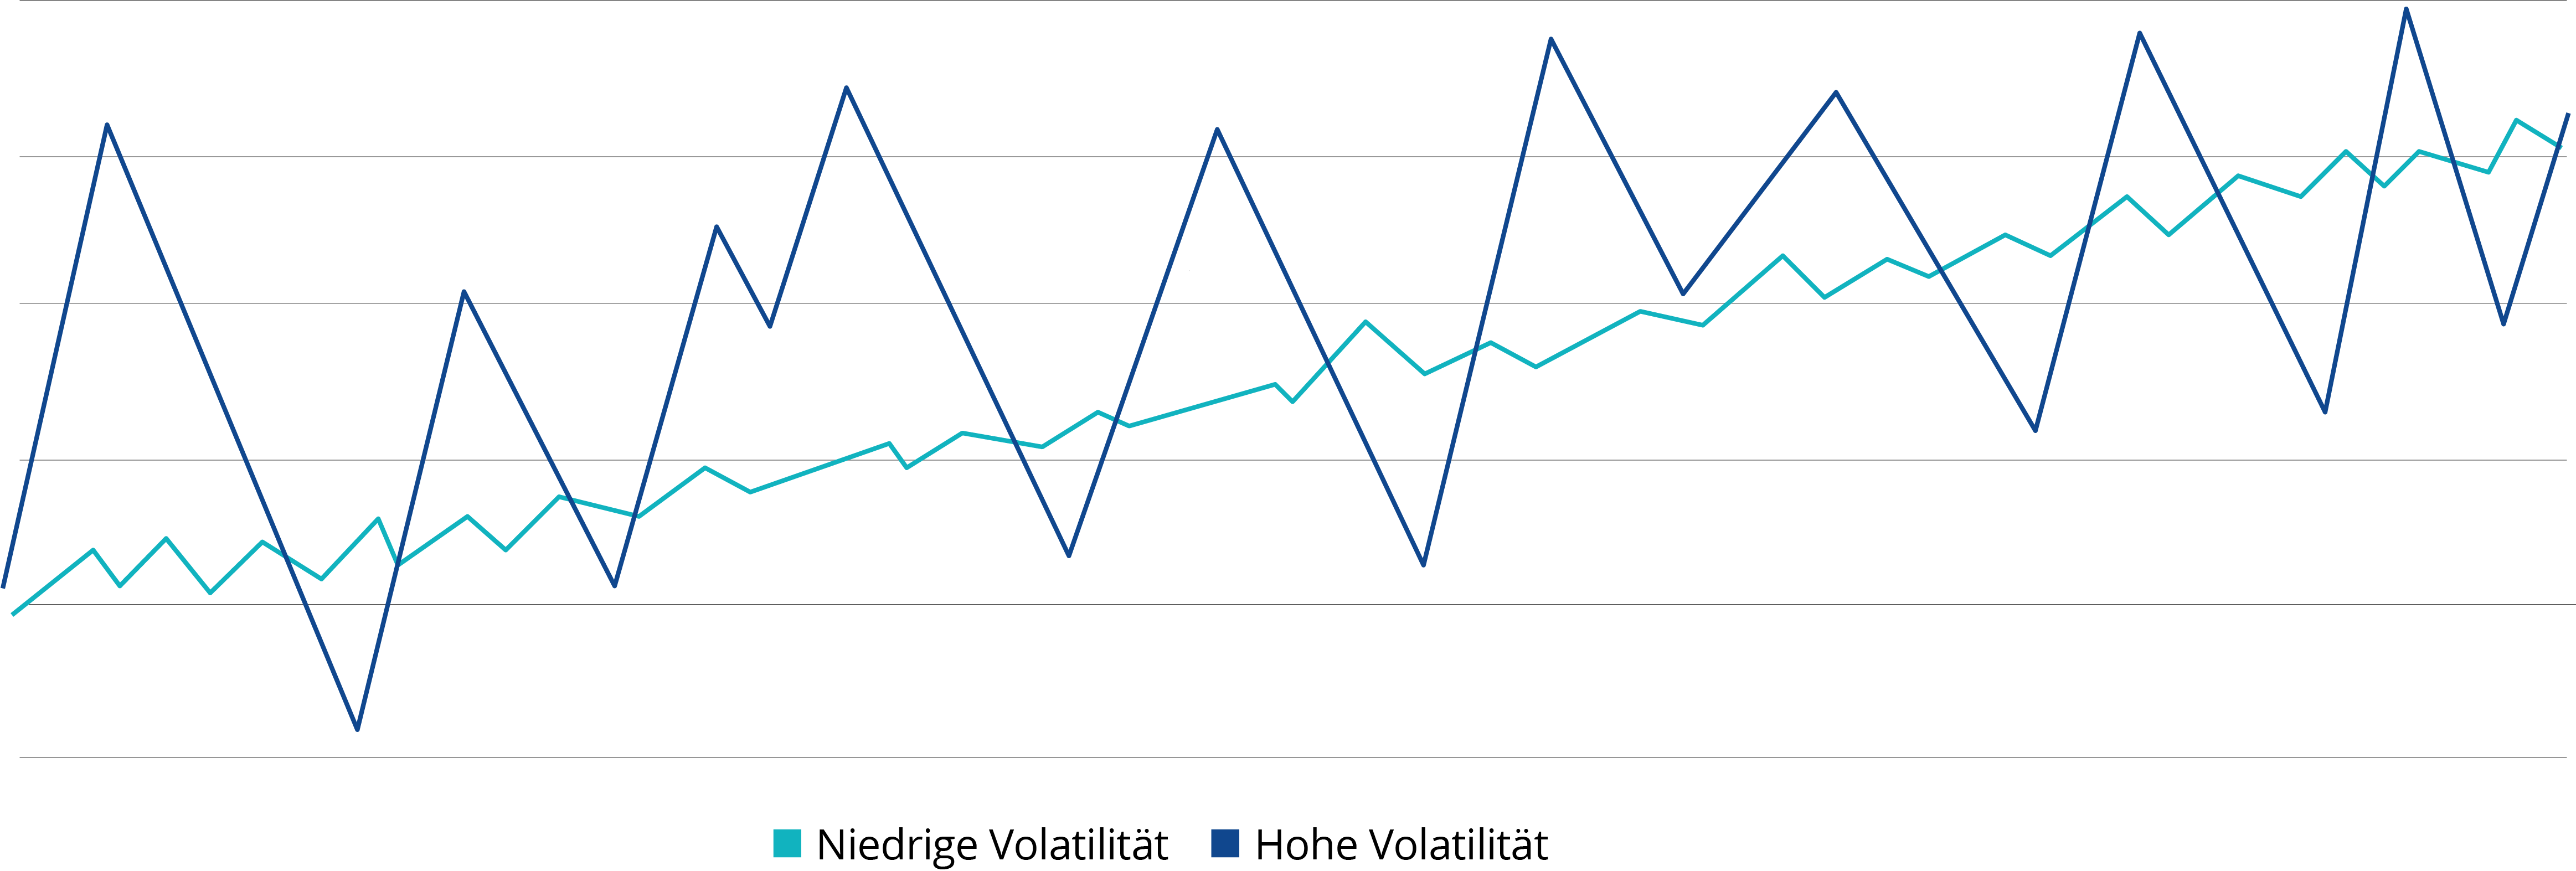 Die Multi-Asset ETF Grafik zeigt den Aspekt Volatilität der Anlageklassen